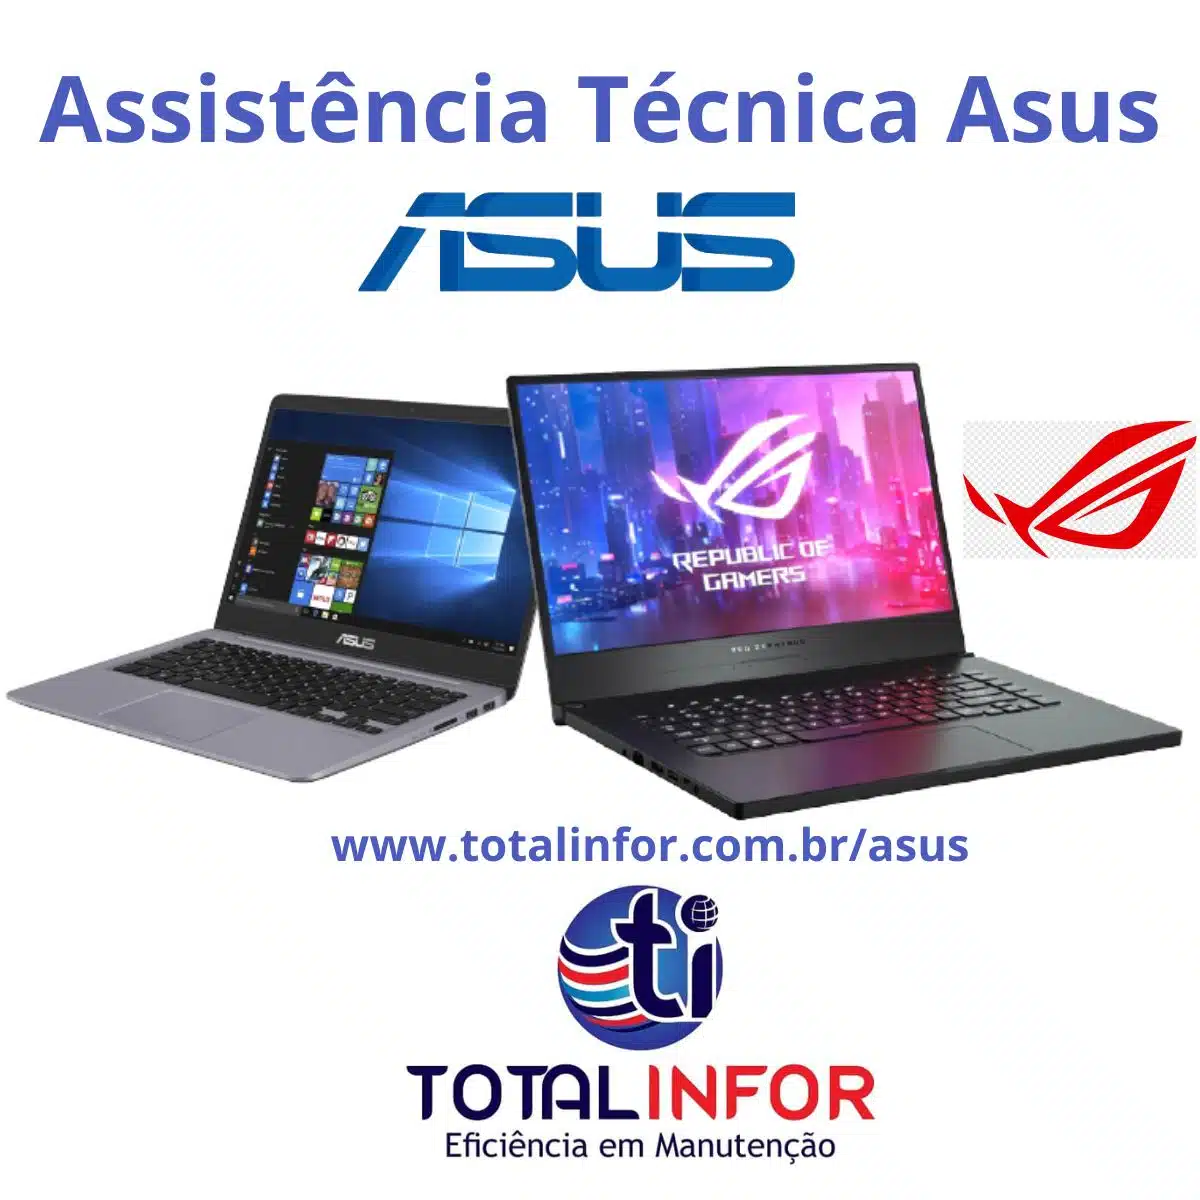 Assistência Técnica Asus - Total Infor